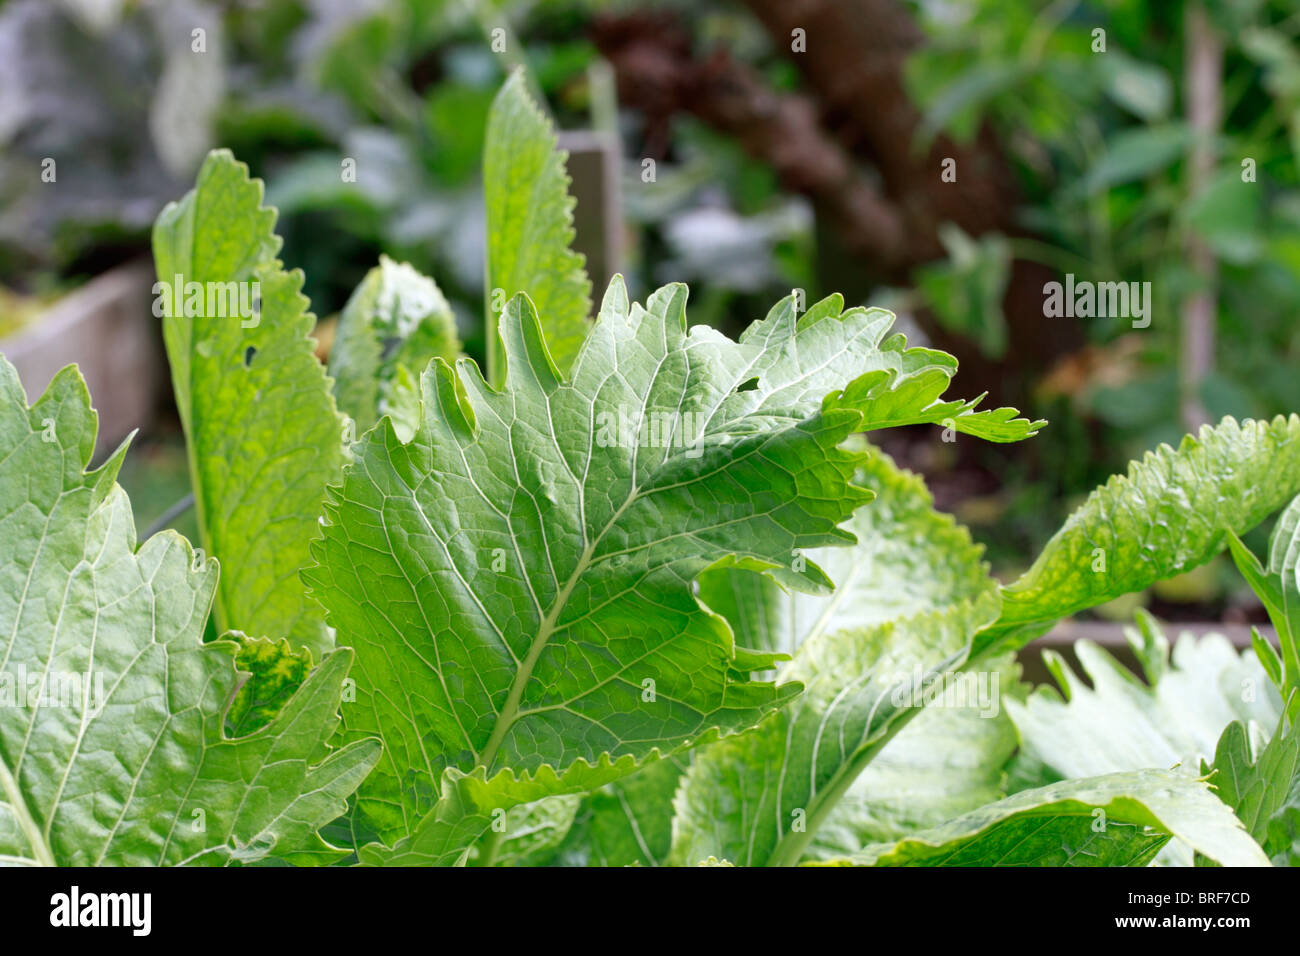 Il rafano, (Armoracia rusticana, syn. Cochlearia armoracia) è una pianta perenne della famiglia Brassicaceae. Coltivata per la sua radice che viene grattugiato, crema e servita con carni bovine. Foto Stock